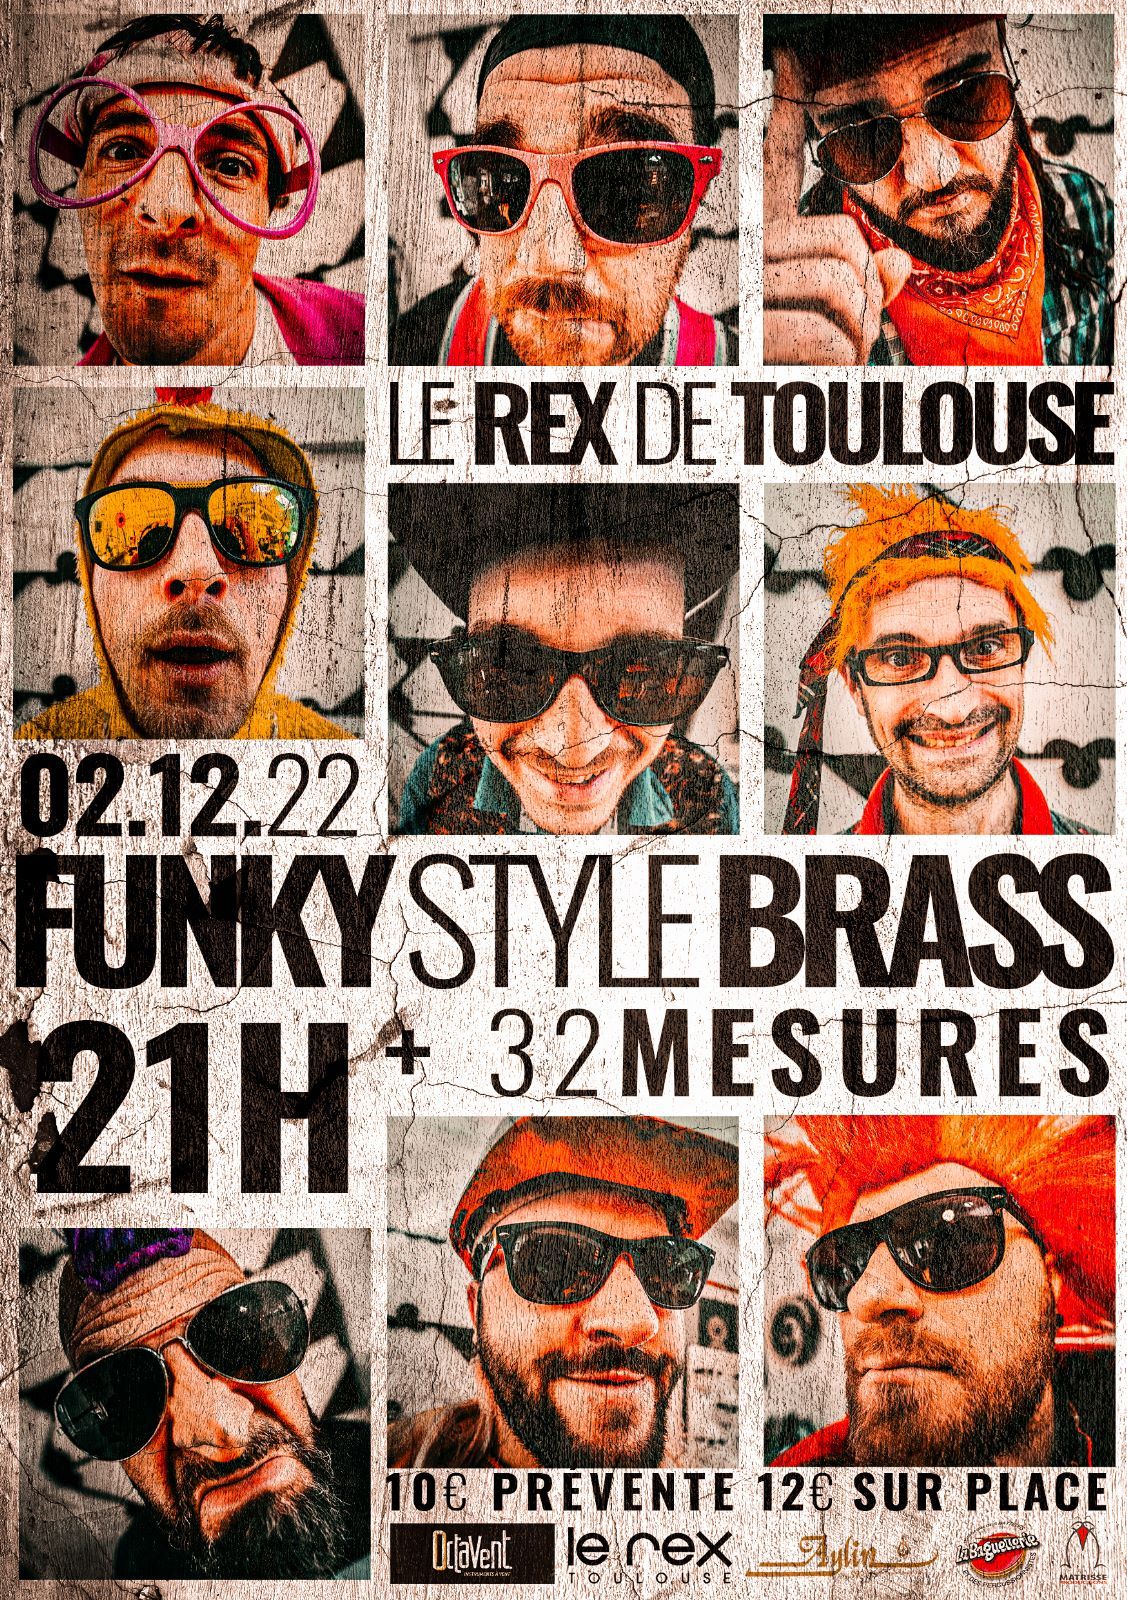 Le Rex de Toulouse - Funky Styke Brass